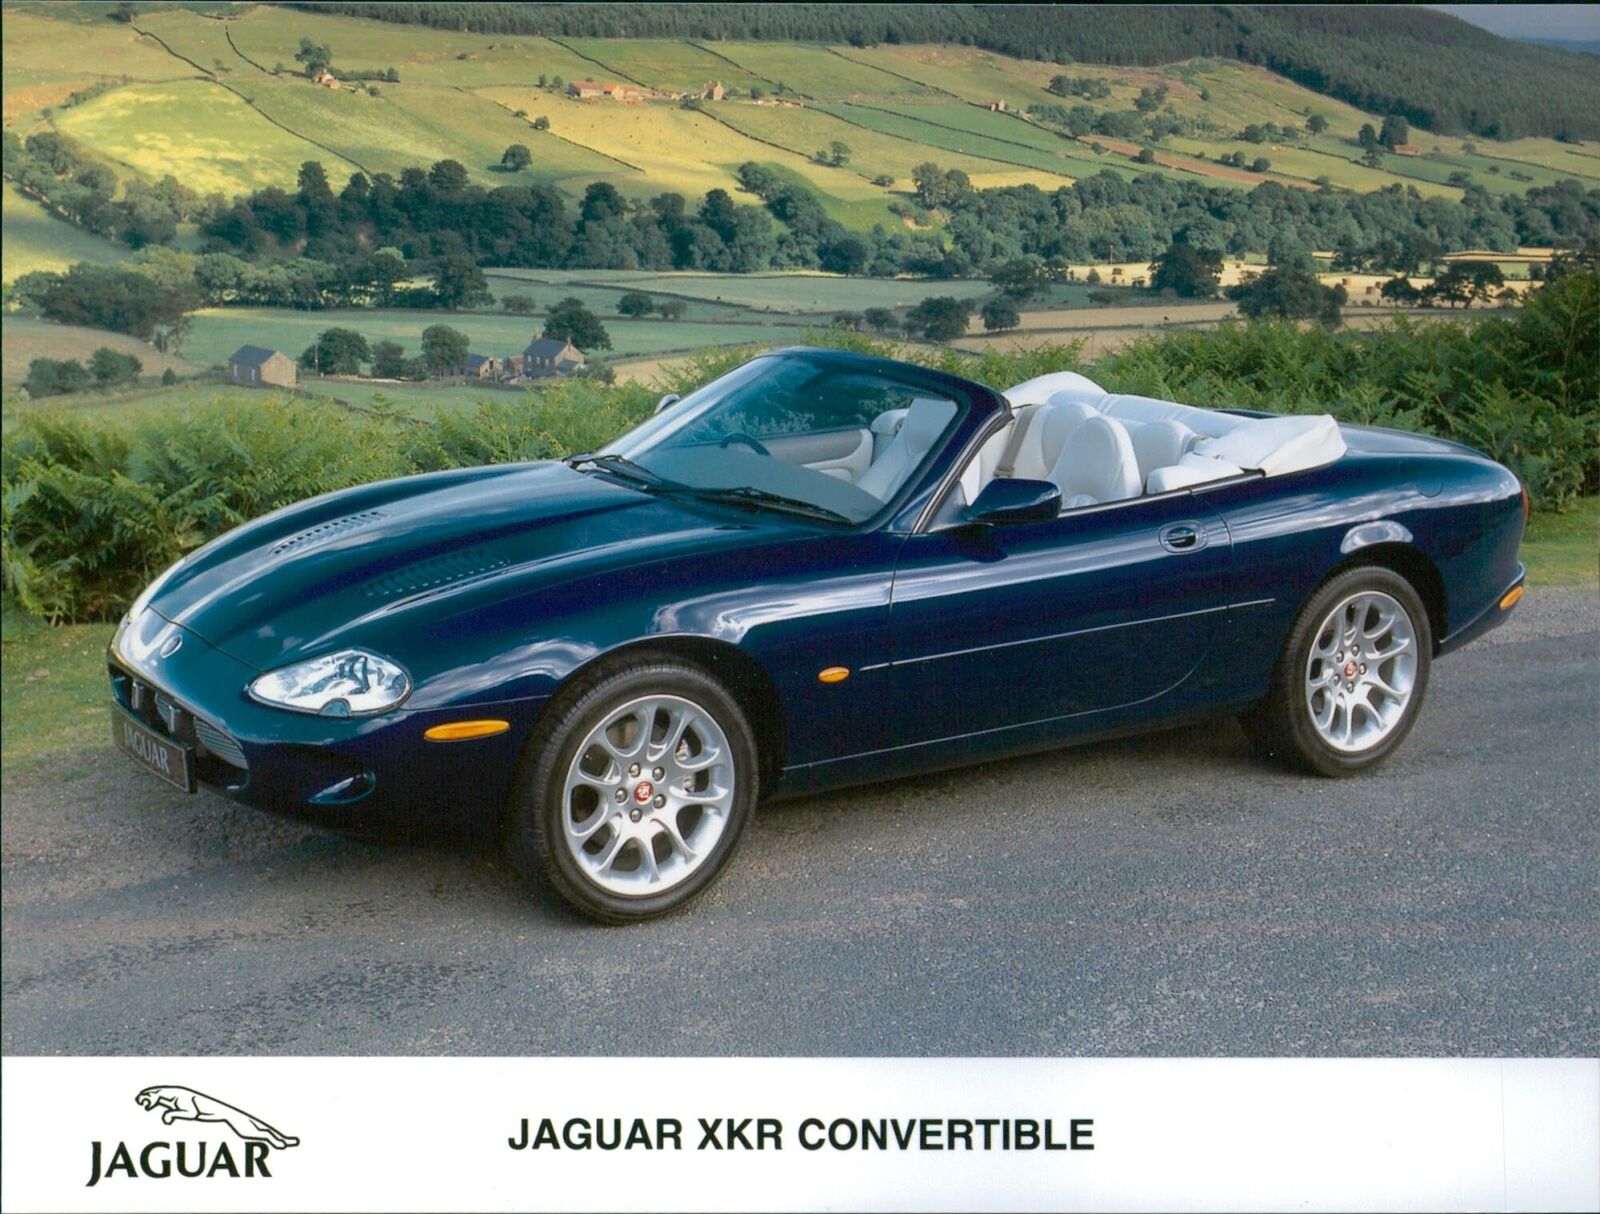 1999 Jaguar XKR Convertible - Vintage Photograph 3360227